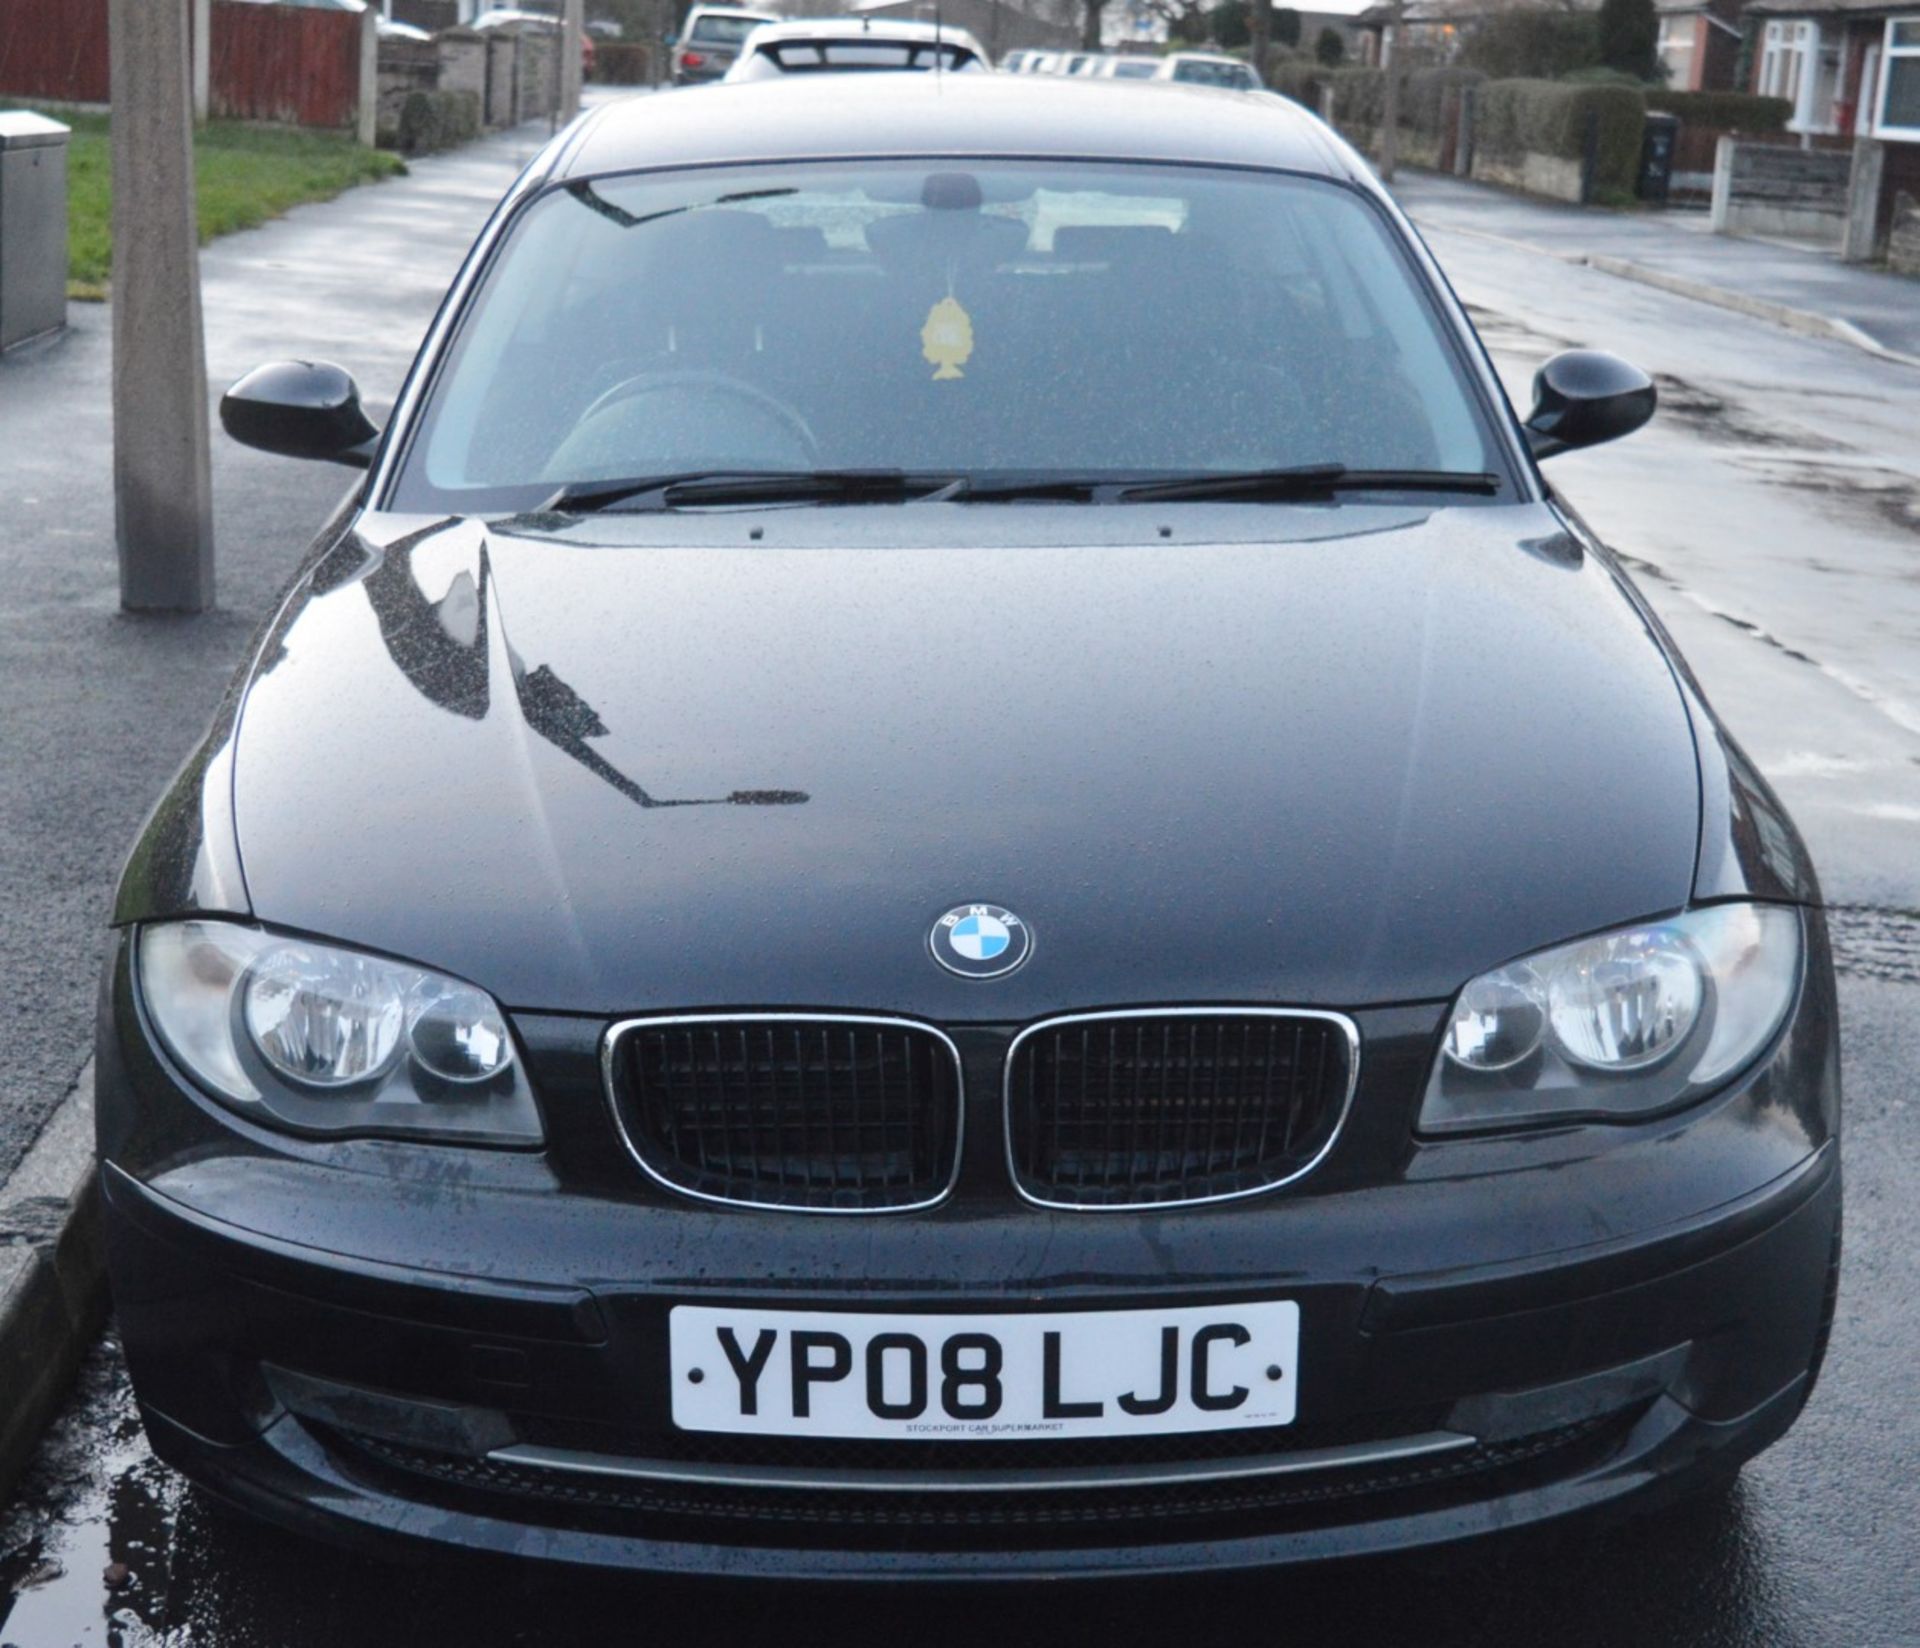 1 x 2008 BMW 1 Series 118d 3 Door Black 2l - £30 Per Year Road Tax - MOT Until January 2020 - - Image 16 of 31